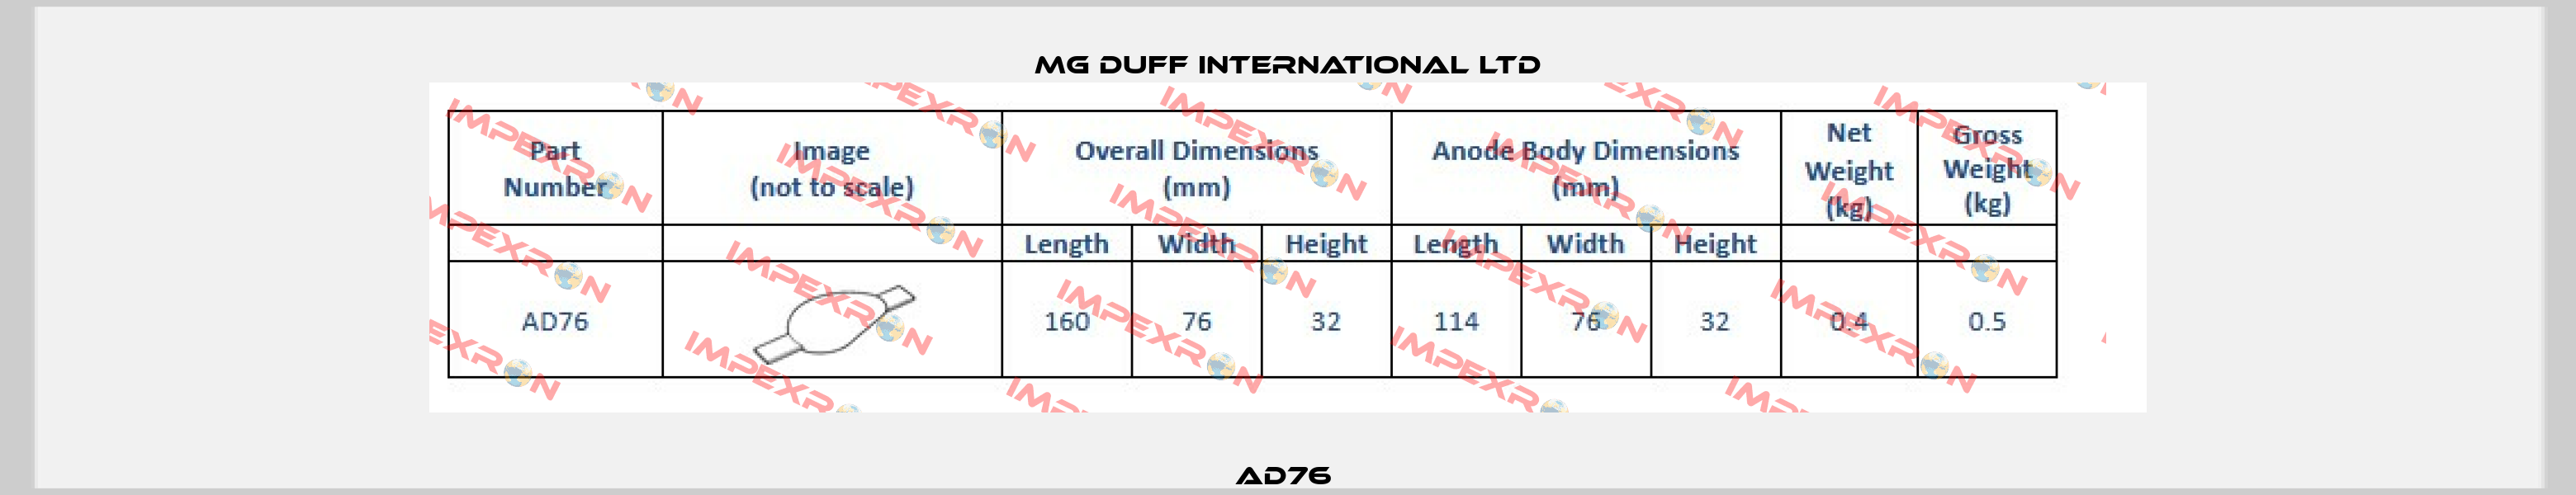 AD76  MG DUFF INTERNATIONAL LTD